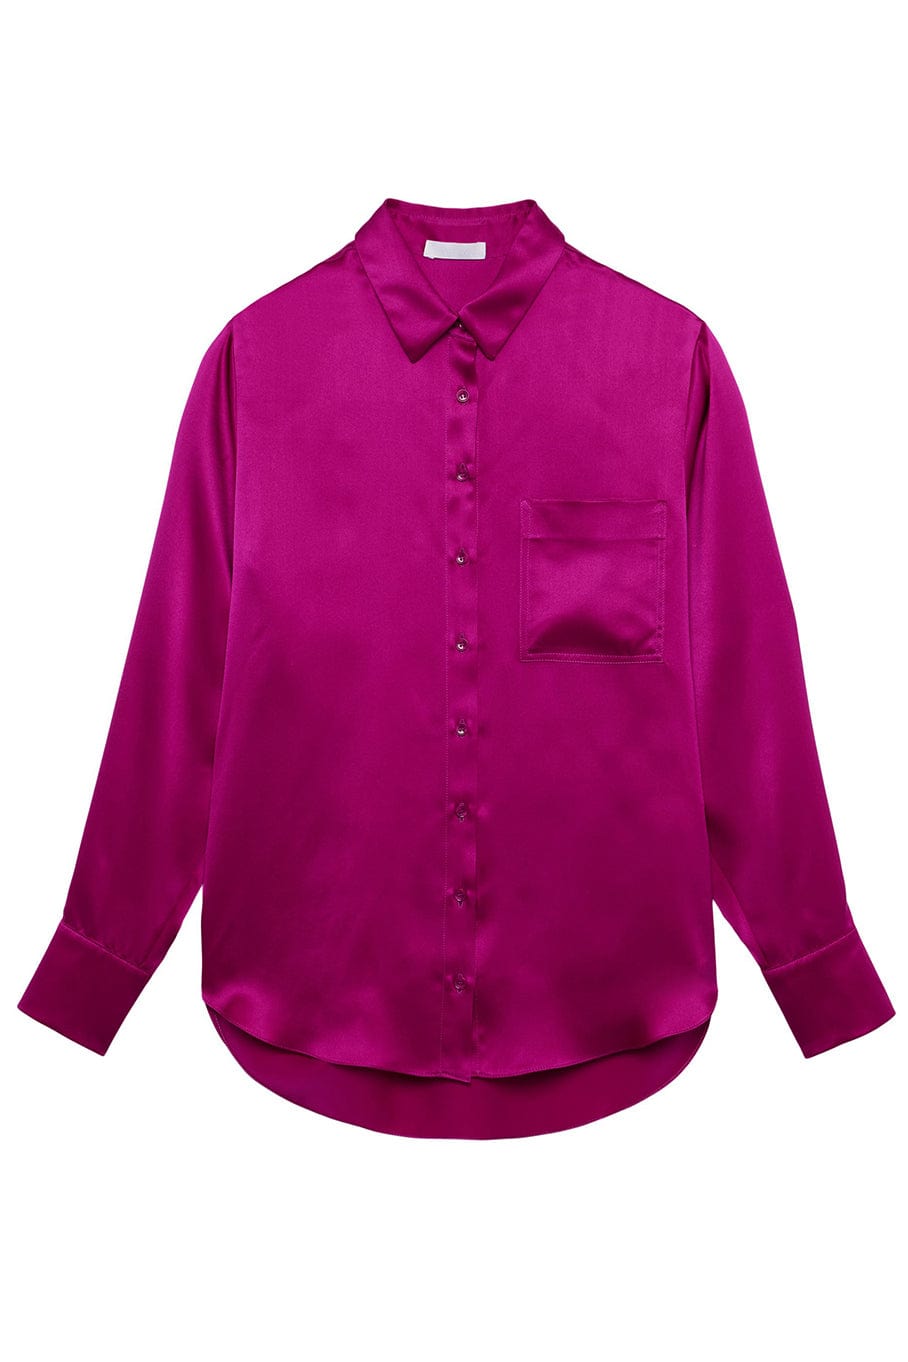 Kime Silk Button Up Shirt CLOTHINGTOPBLOUSE SABLYN   